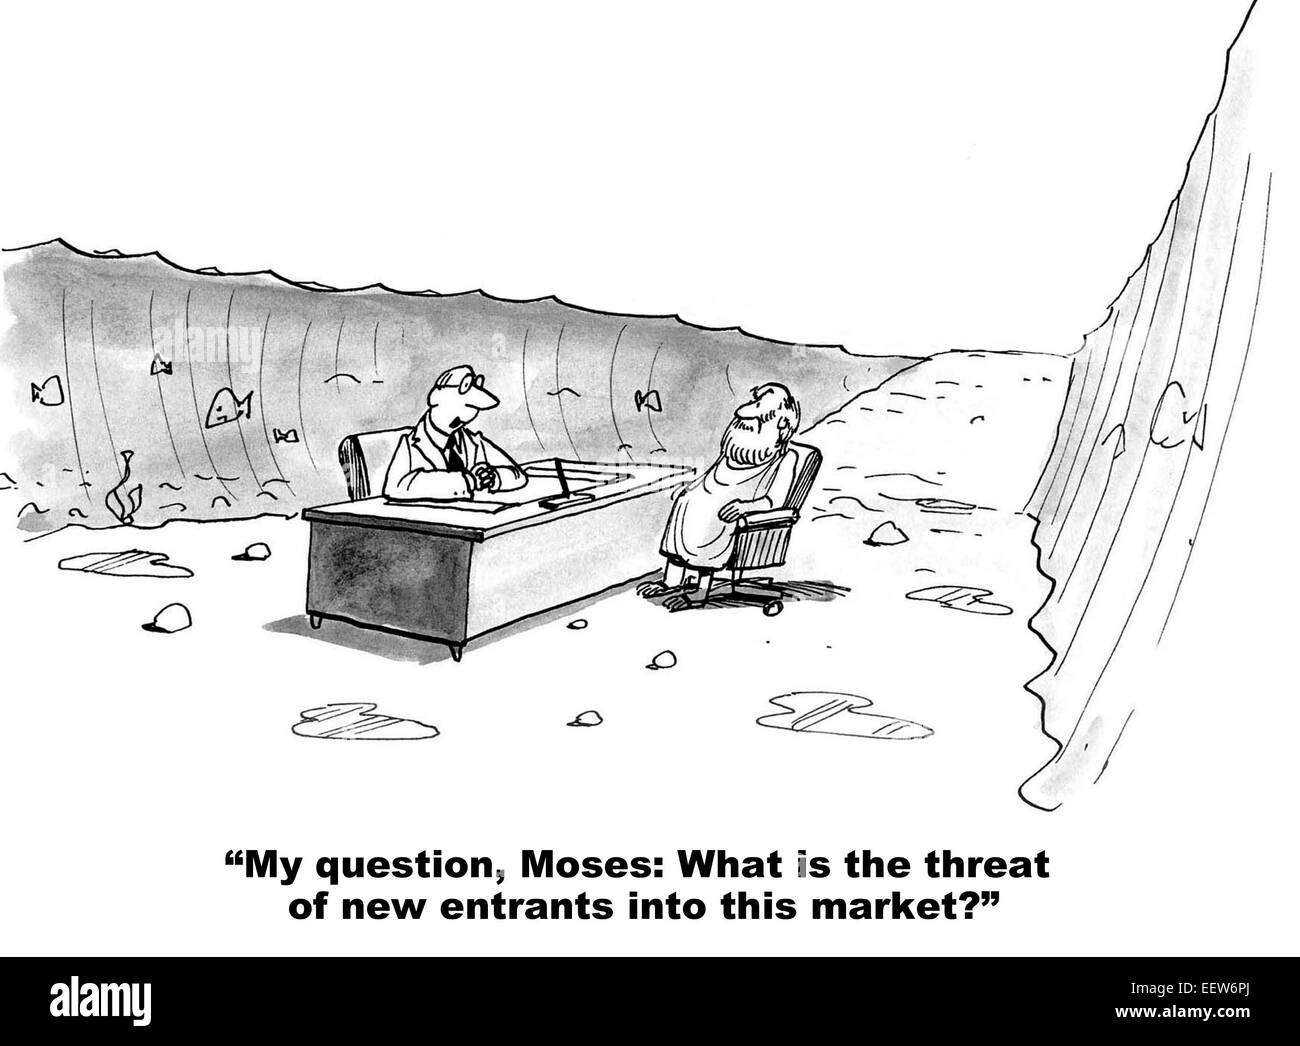 Caricature montrant un homme d'une rencontre avec Moïse et Moïse demande ce que la menace de nouveaux entrants est dans ce marché. Banque D'Images